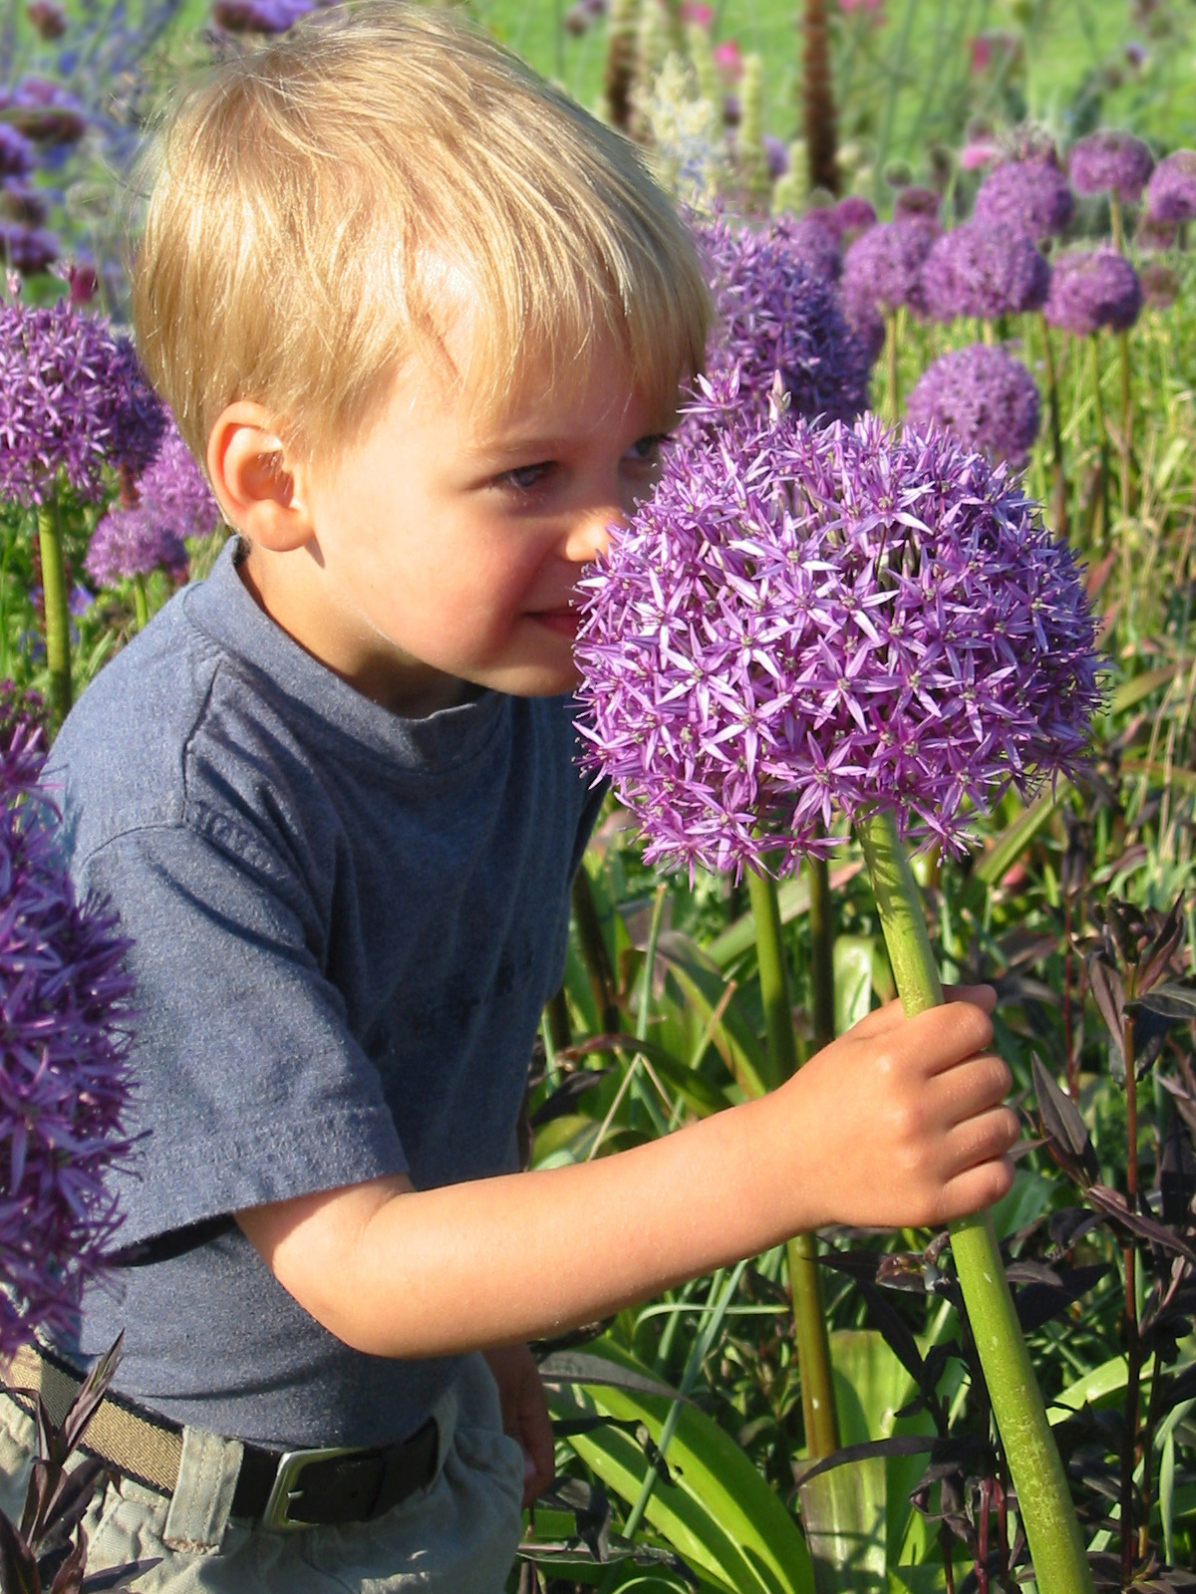 Kinderfreundliche Pflanzen - Viele attraktive Arten regen zum Riechen, Anfassen und Basteln an. Die besten Tipps vom Premium-Gärtner.